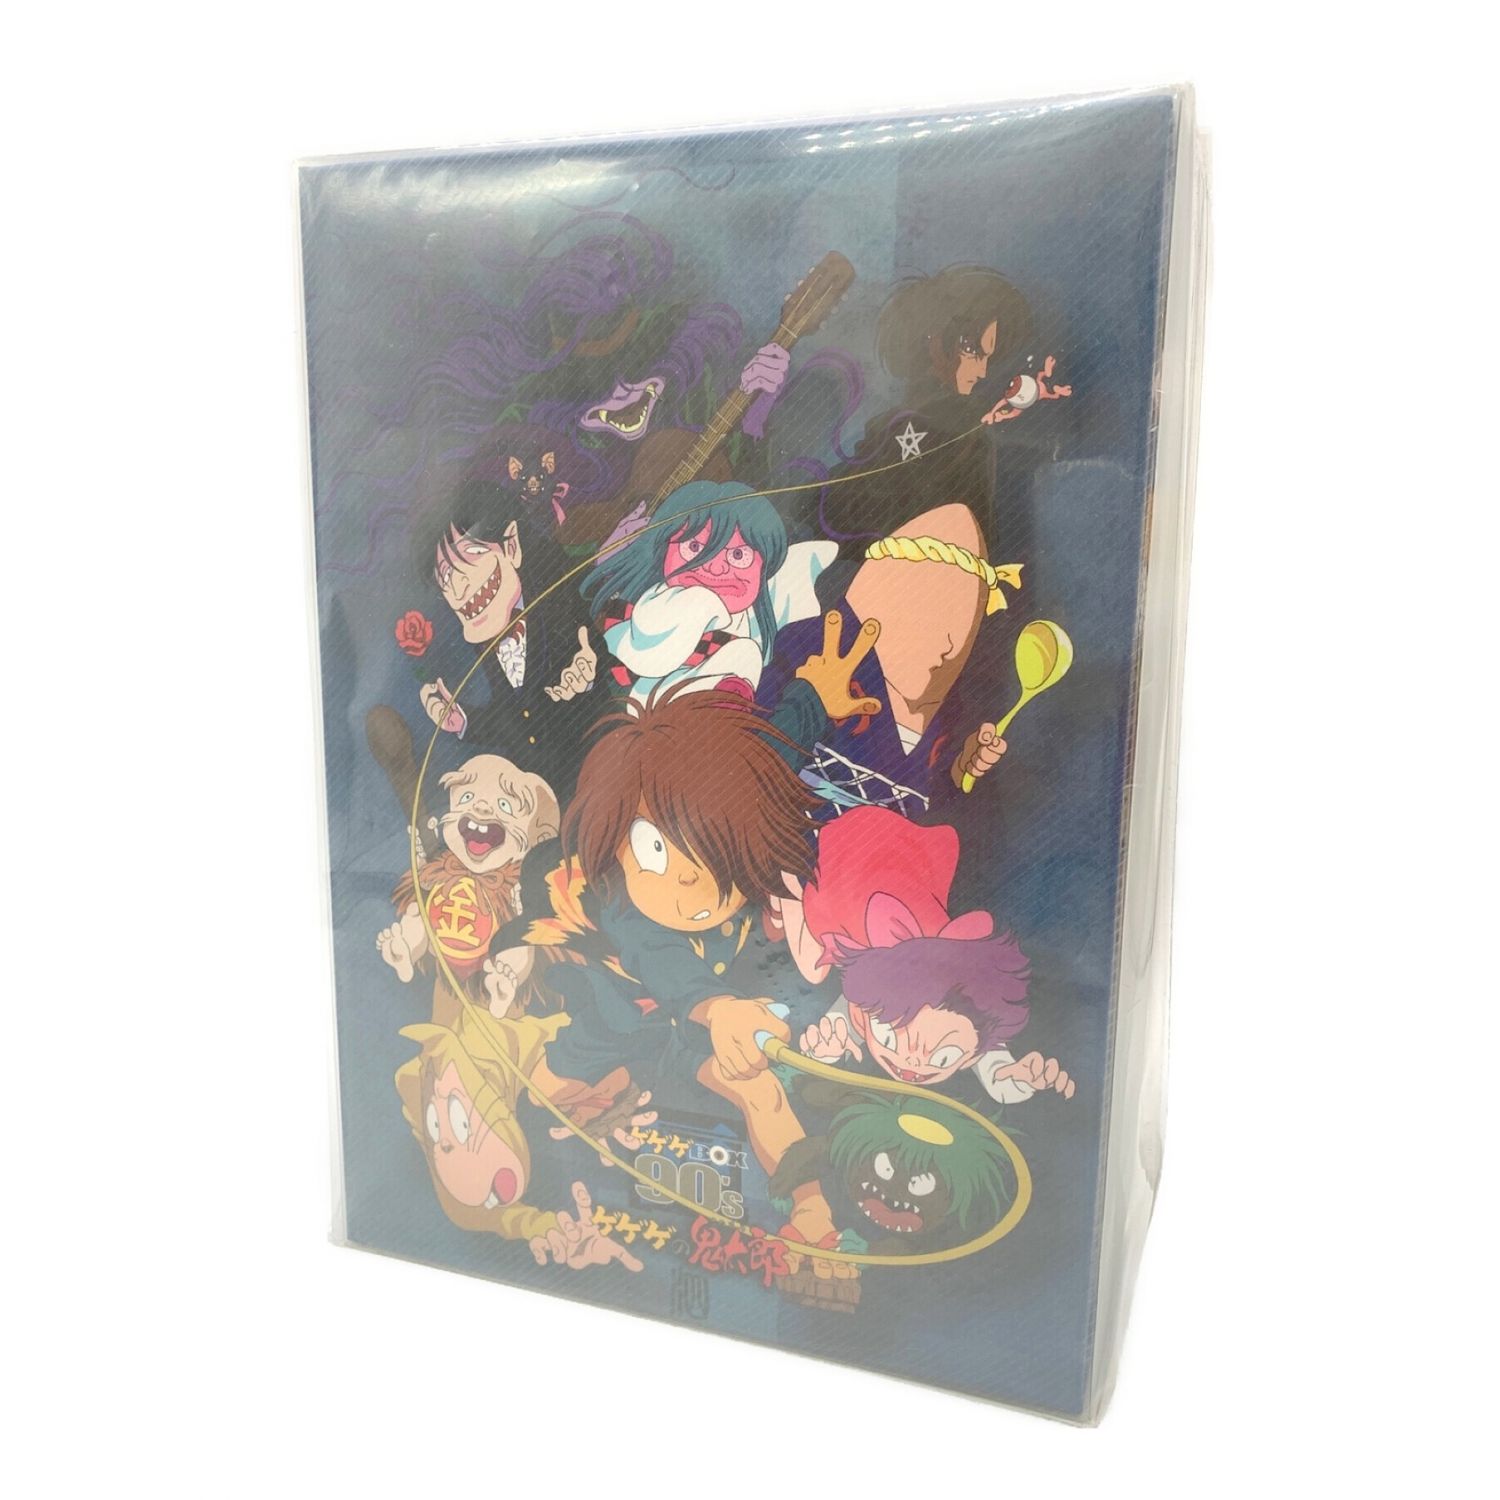 ゲゲゲの鬼太郎 DVD-BOX ゲゲゲBOX 90's 特典なし｜トレファクONLINE